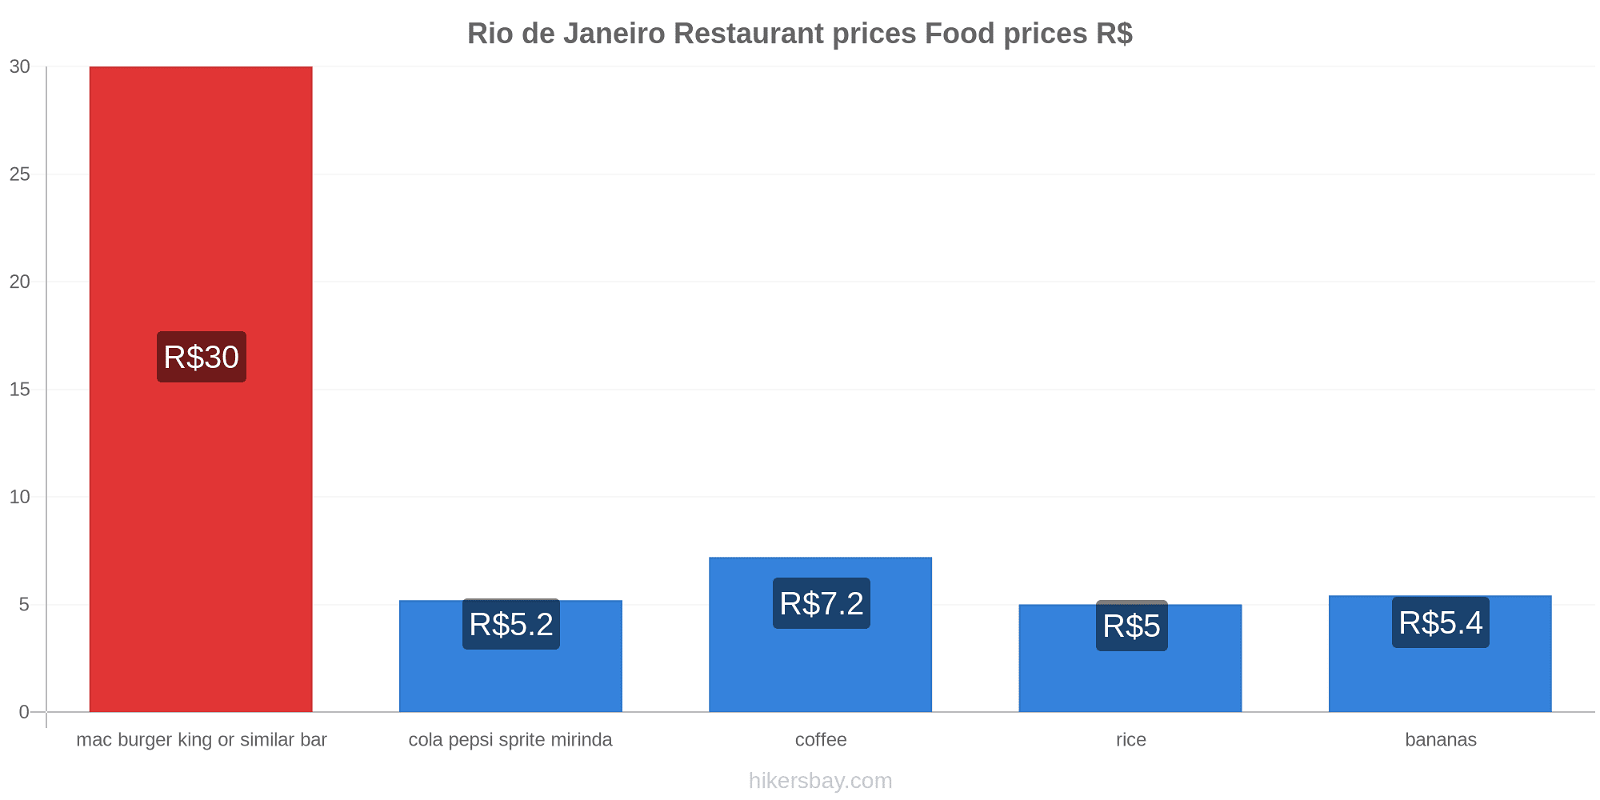 Rio de Janeiro price changes hikersbay.com